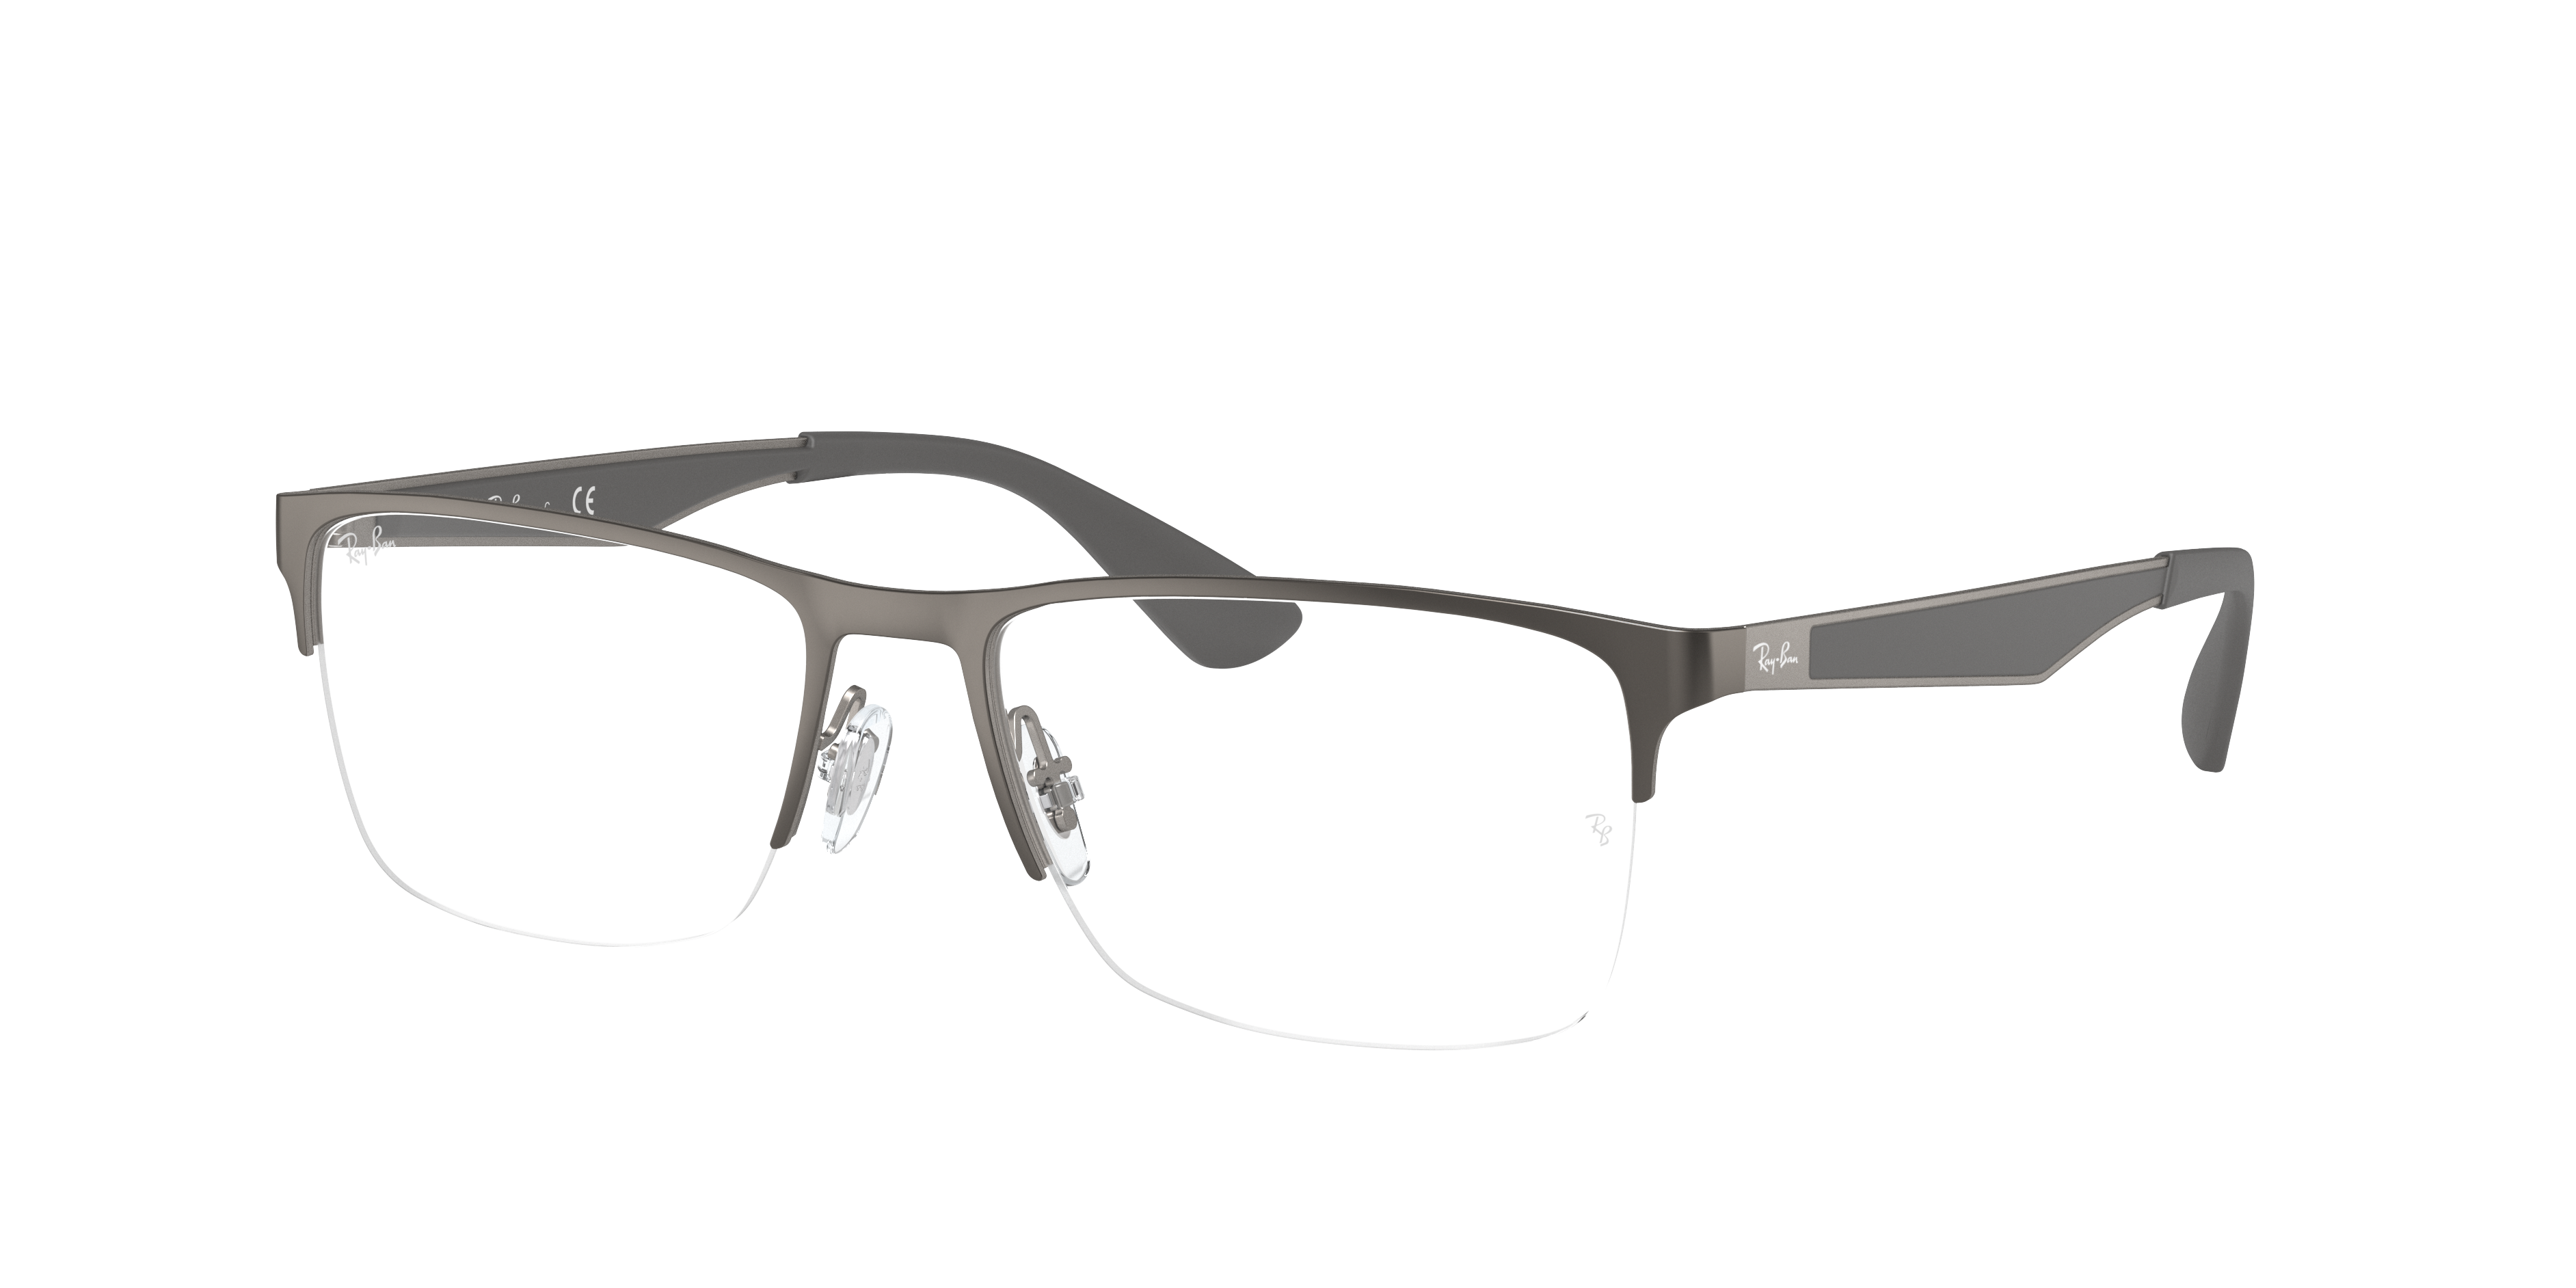 Rb6335 Optics Eyeglasses with Gunmetal Frame | Ray-Ban®